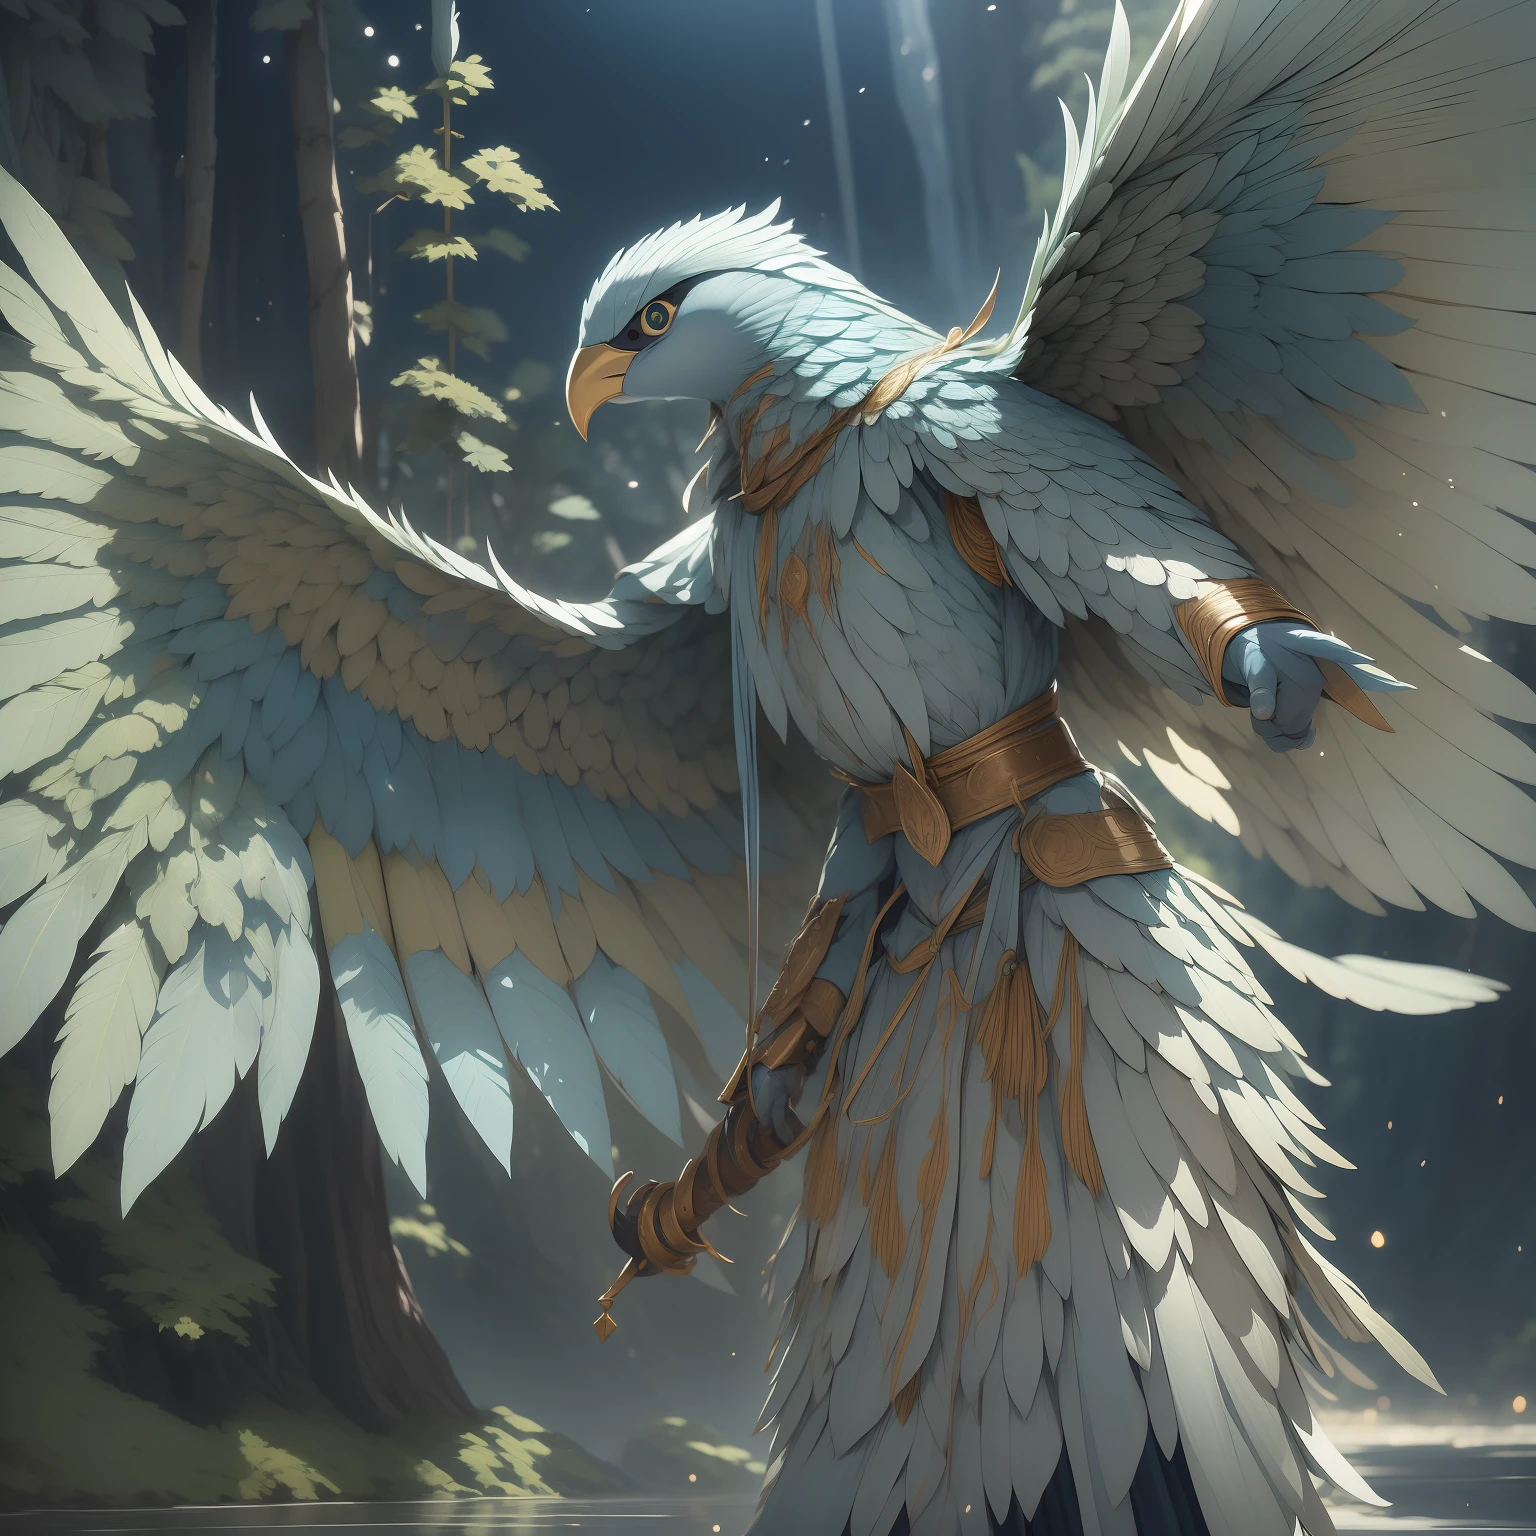 阿拉科克拉部落, 有着明亮的羽毛和锐利的眼睛. 它的羽毛有深浅不同的蓝色, 白色和银色, 反映出天堂的纯净. 她动作优雅敏捷, 展现优雅和权威. 超详细, 龙与地下城, 虚幻引擎, 诱人色彩的顶灯, 体积照明